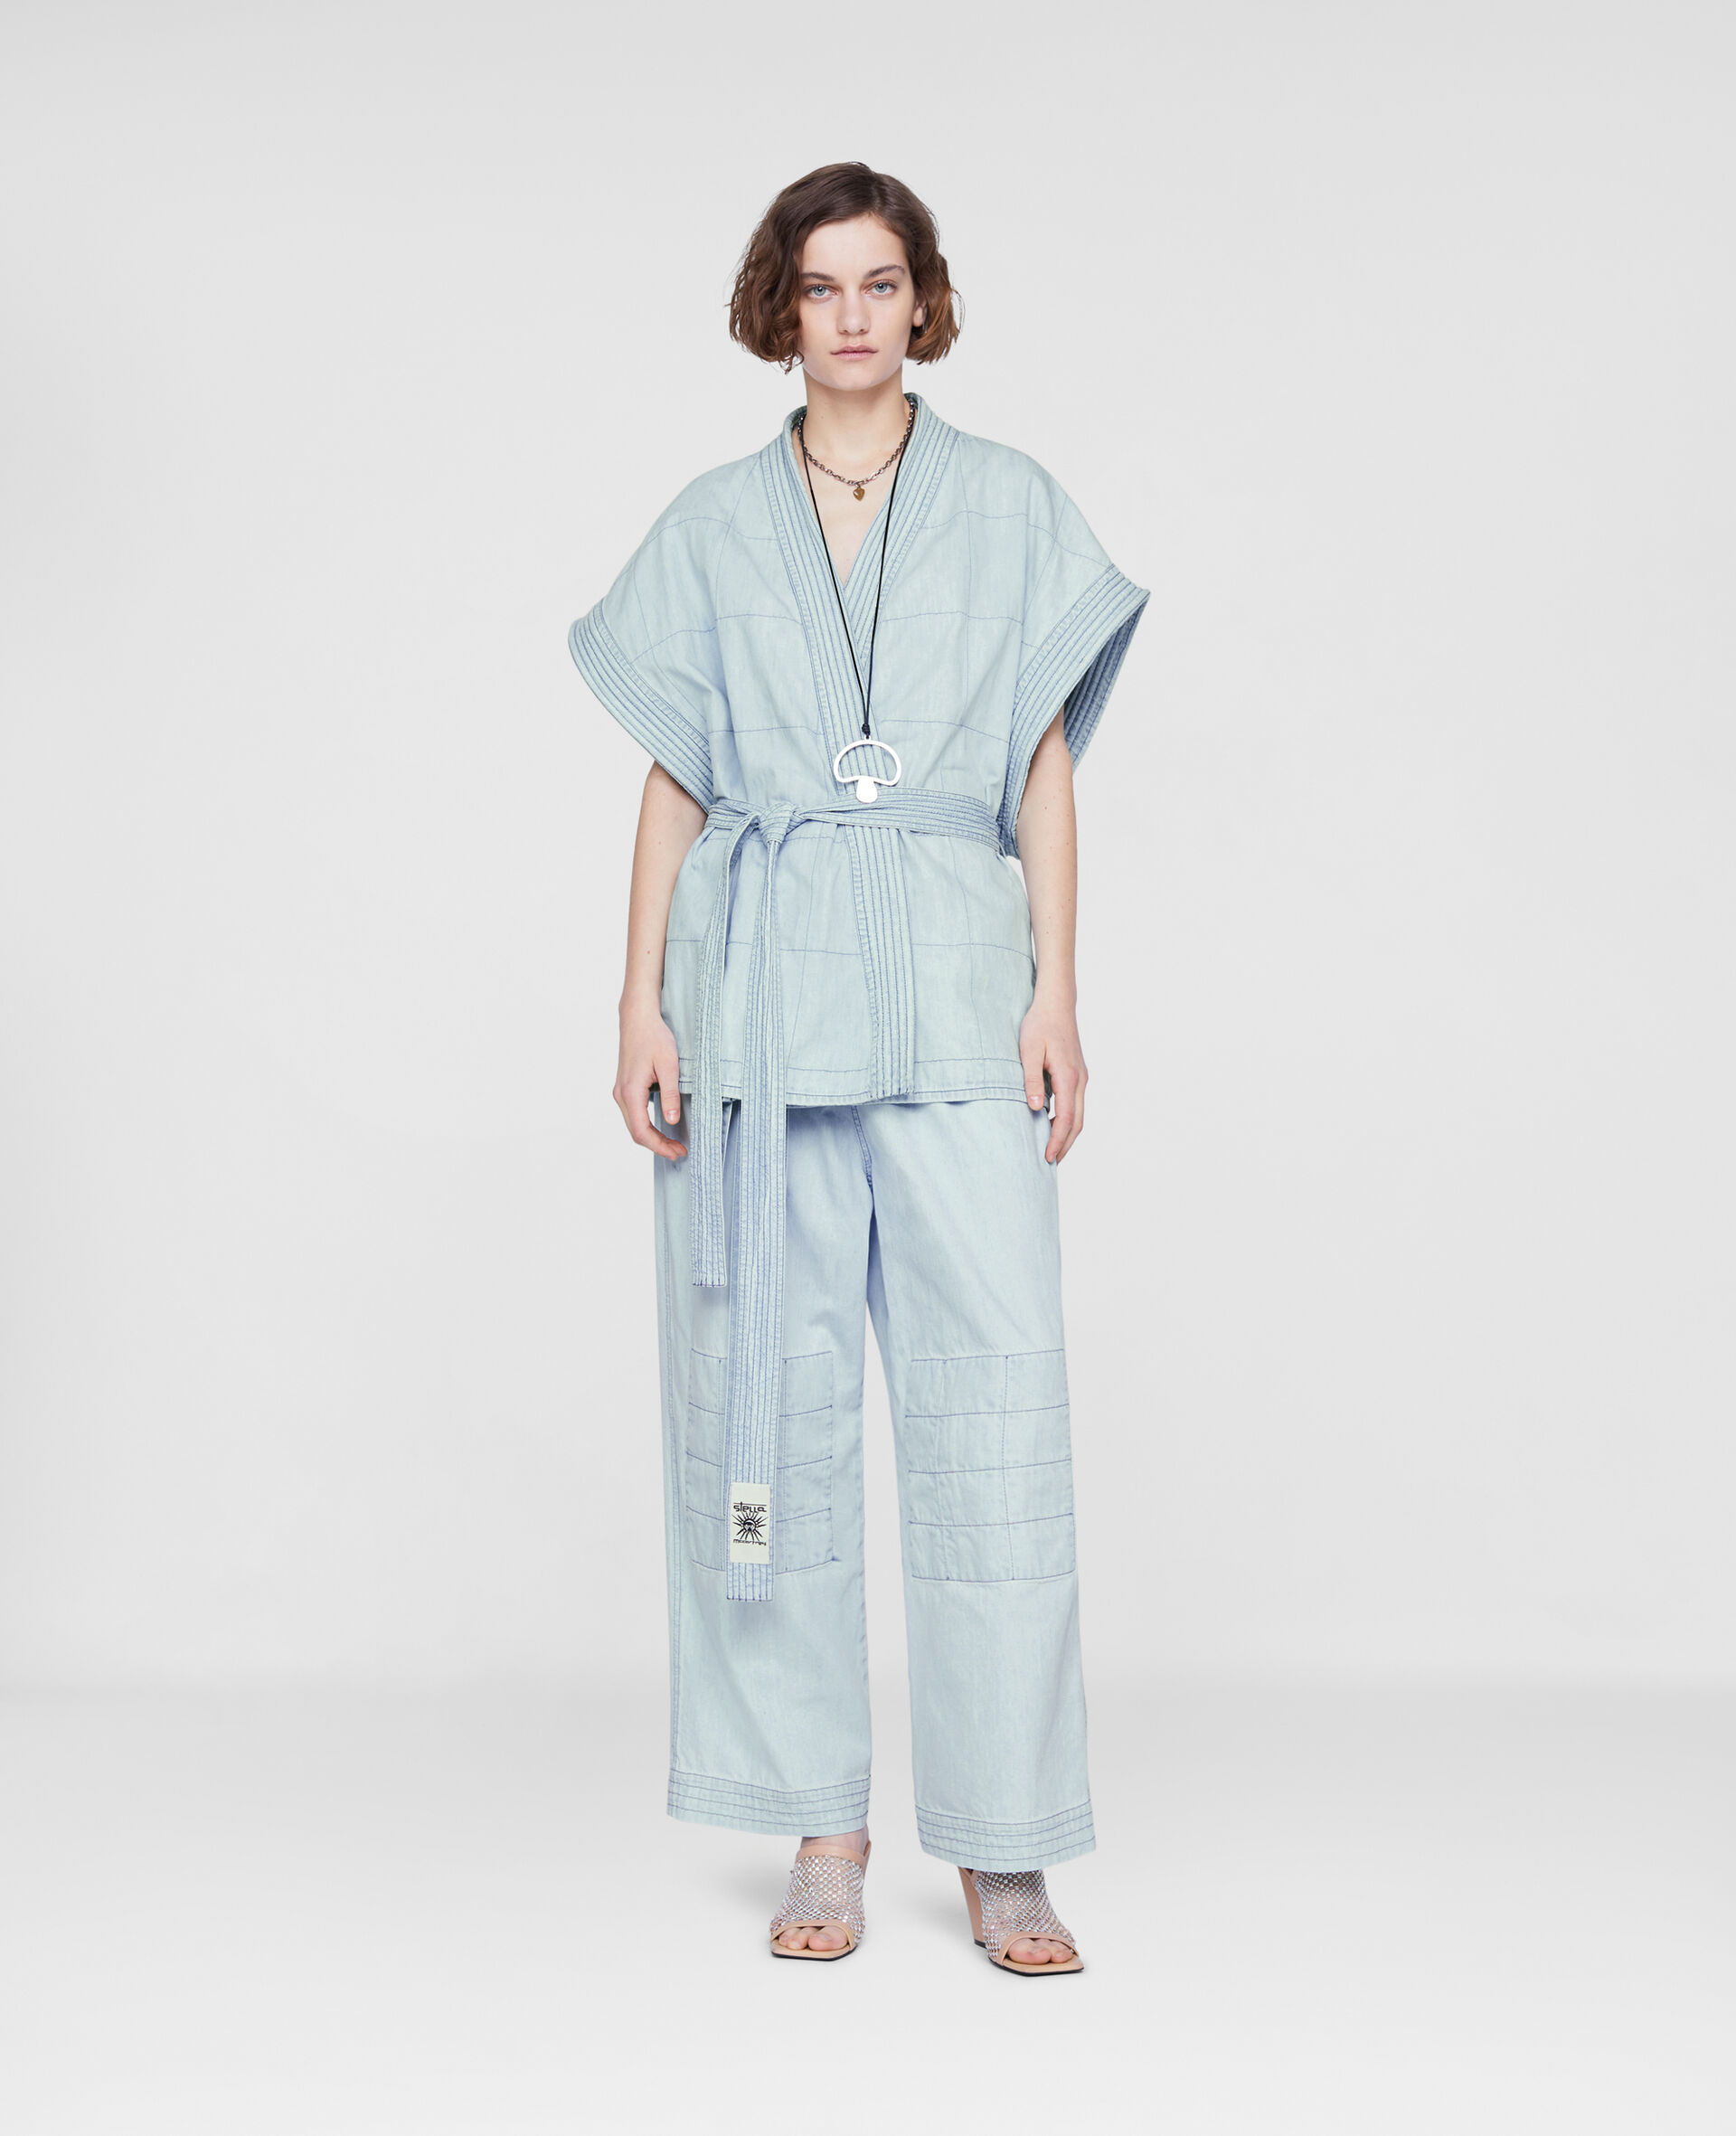 Kimono‐Inspired Denim Jacket-Blue-large image number 1